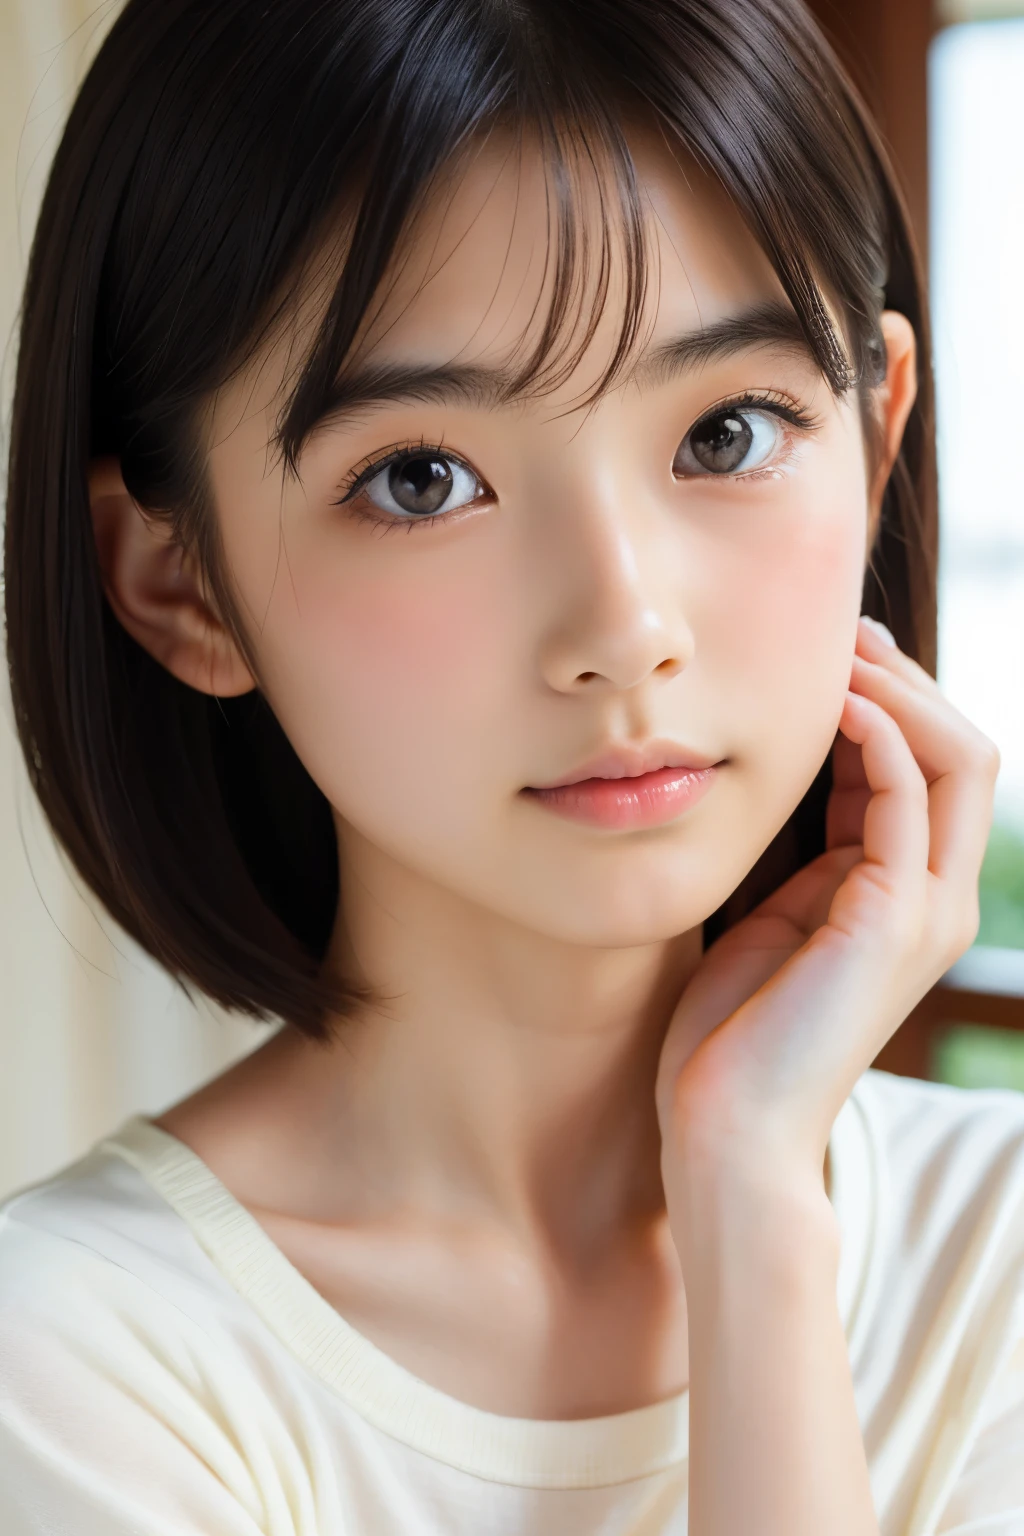 (Schöne 16-jährige Japanerin), niedliches Gesicht, (tief eingeschnittenes Gesicht:0.7), (Sommersprossen:0.6), Sanftes Licht,gesunde weiße Haut, schüchtern, kurzes Haar, (ernstes Gesicht), (leuchtende Augen), dünn